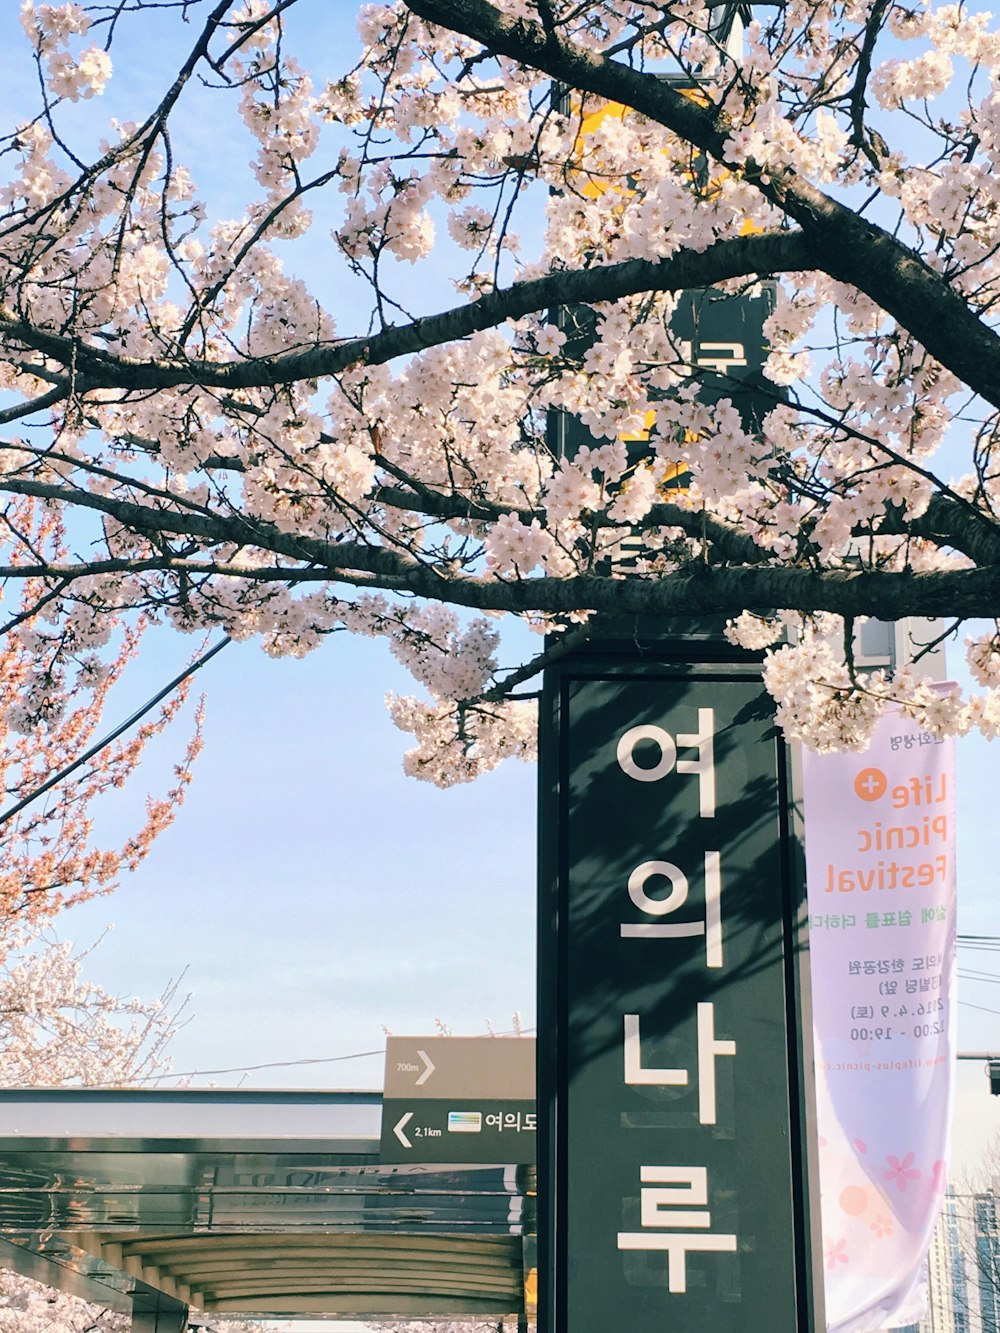 sinal verde do galpão com texto Hangul durante o dia ao lado da árvore com flores rosa claras durante o dia